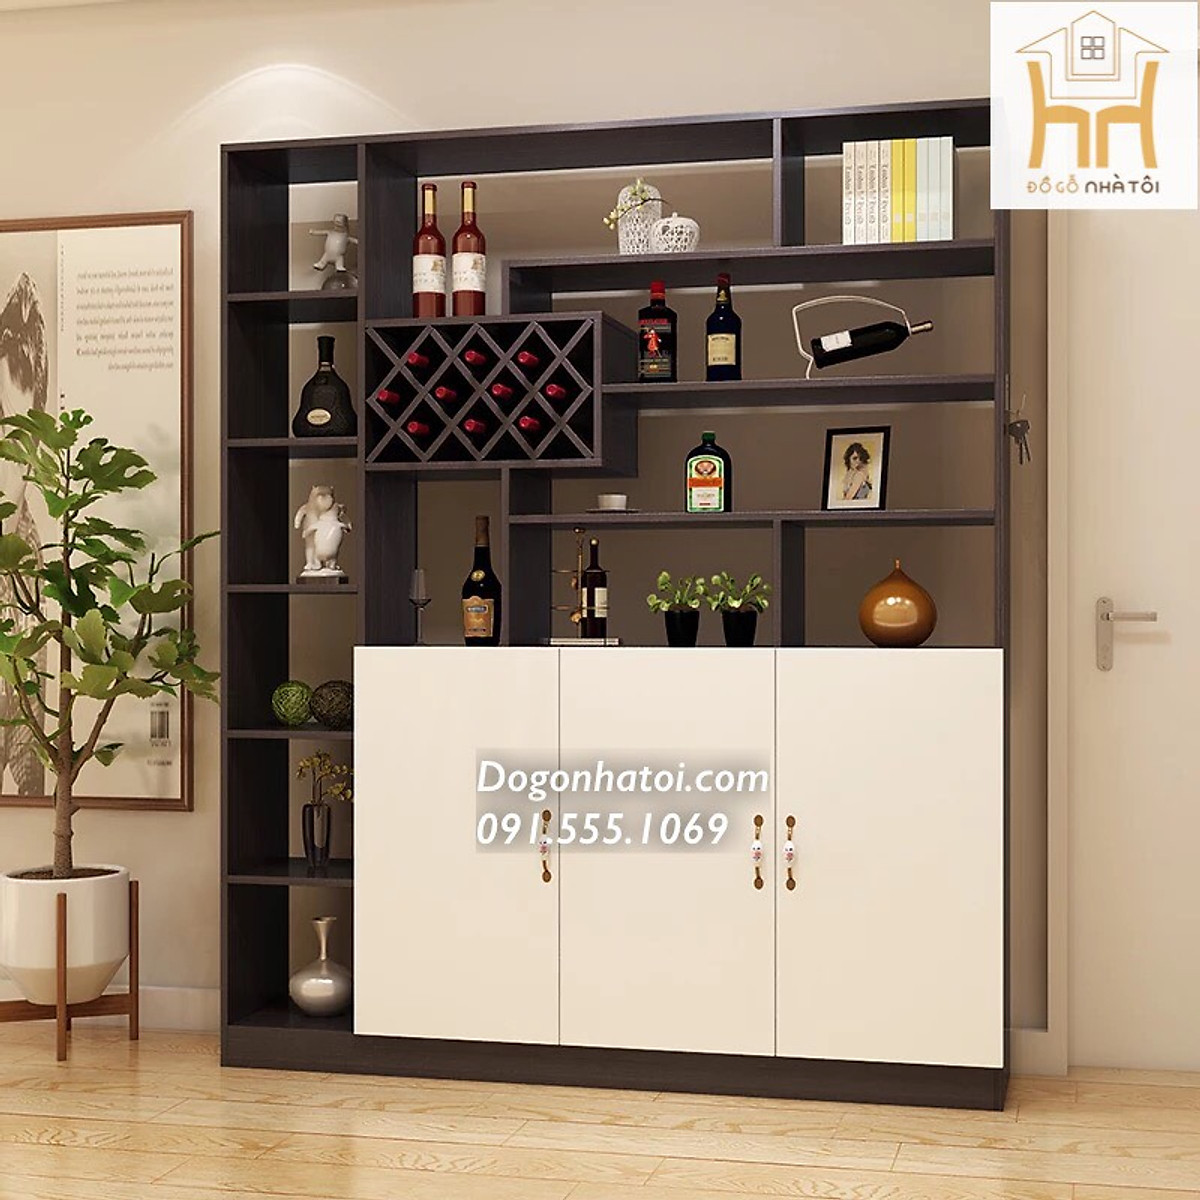 Tủ rượu: Tủ rượu không chỉ là nơi để đựng và bảo quản rượu mà còn là một vật dụng trang trí sang trọng cho ngôi nhà của bạn. Hãy cùng khám phá những tủ rượu đẹp và đáp ứng nhu cầu của bạn với một mẫu thiết kế đẹp và chất lượng.